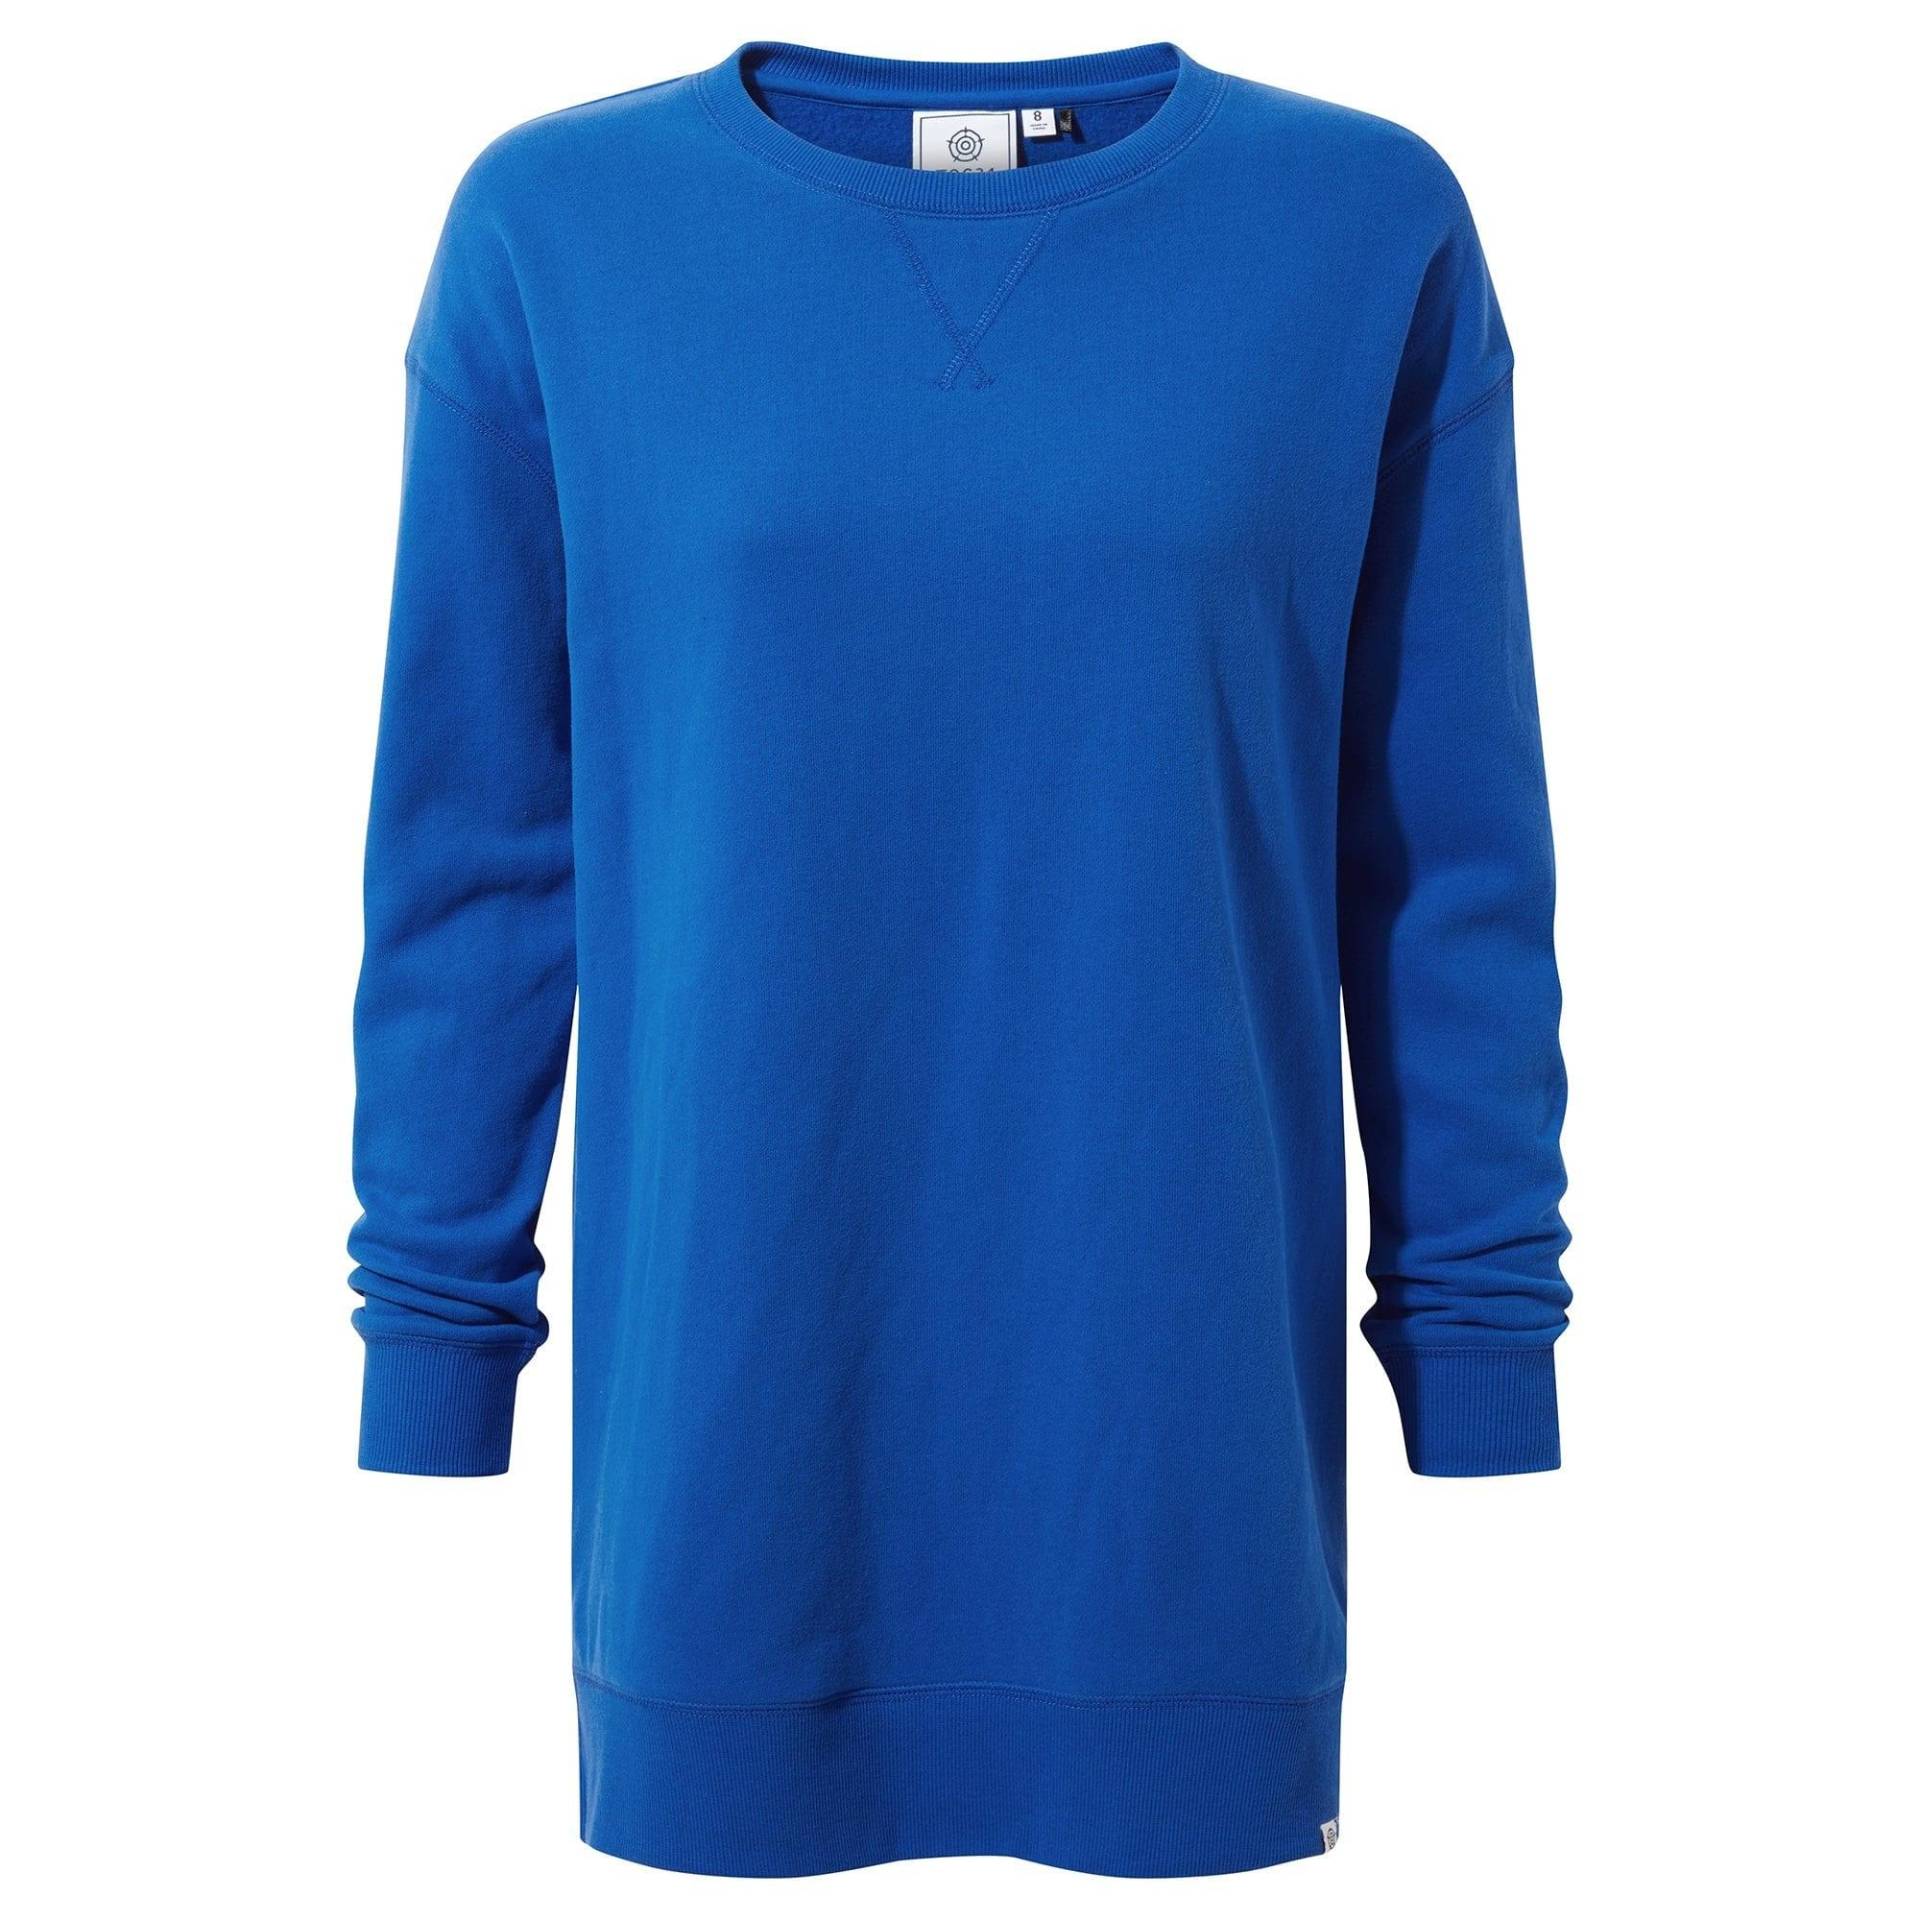 Michelle Sweatshirt Damen Bleached Blau 38 von Tog24